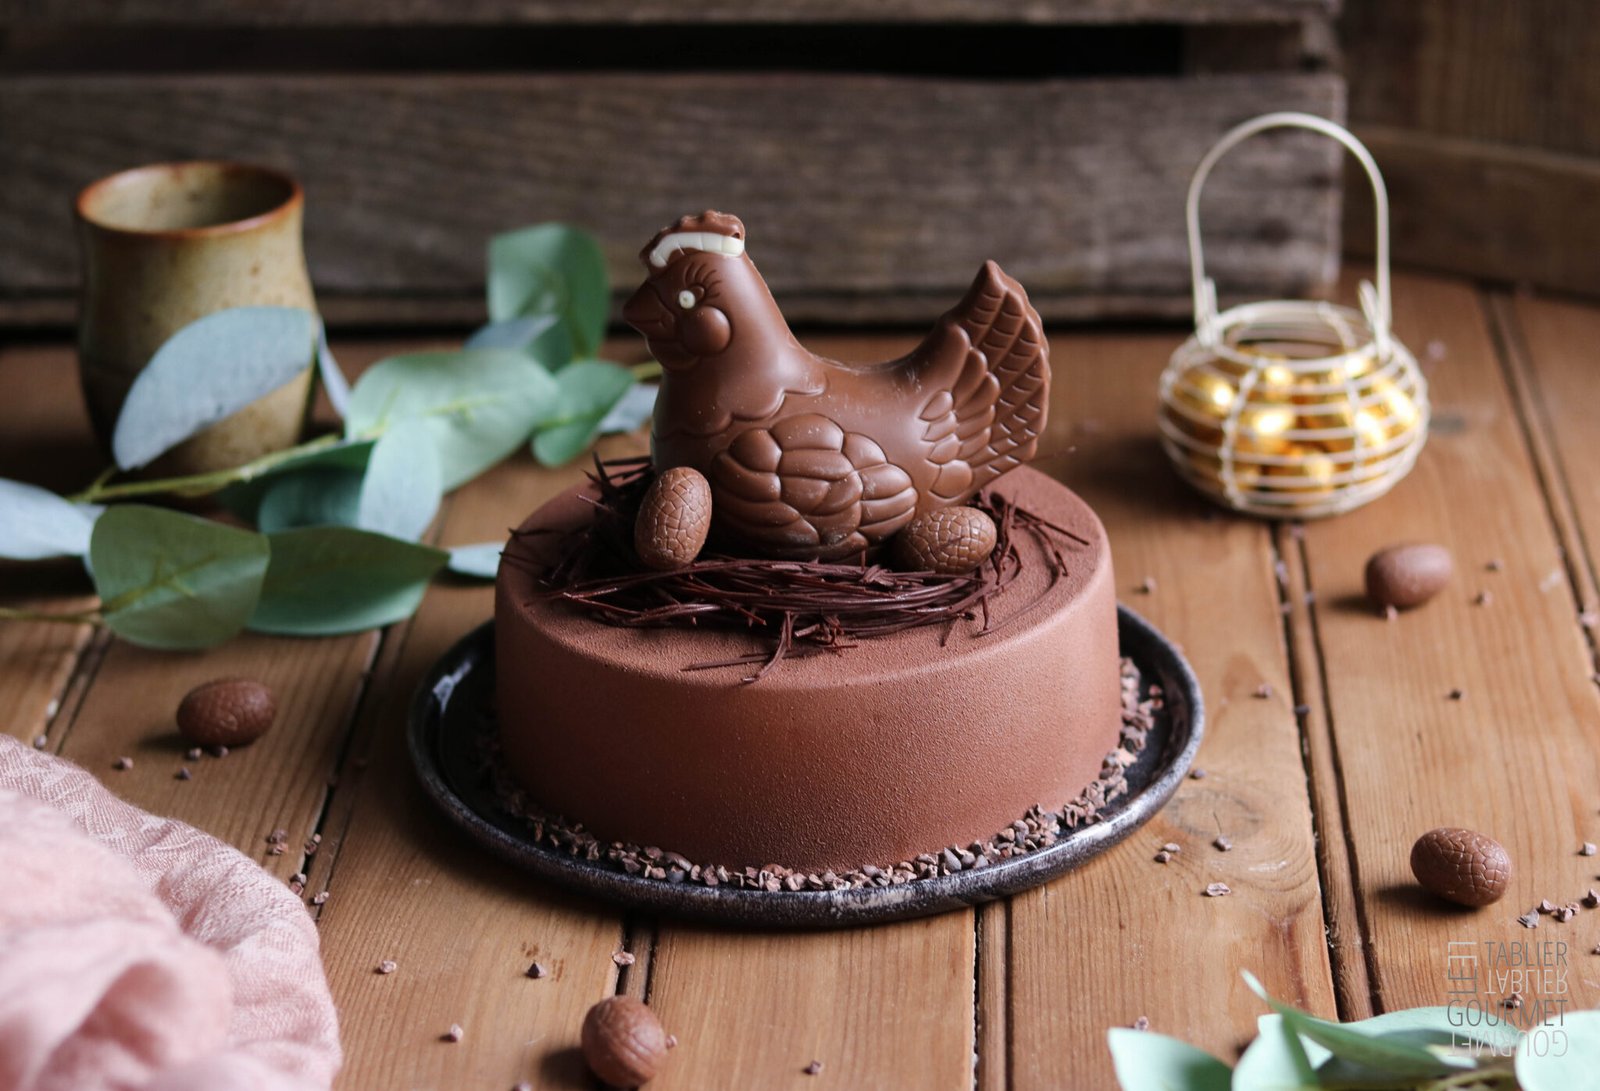 L'entremets de Pâques au chocolat et caramel est surmonté d'un nid en chocolat et d'une figurine aussi en chocolat, en forme de poulette